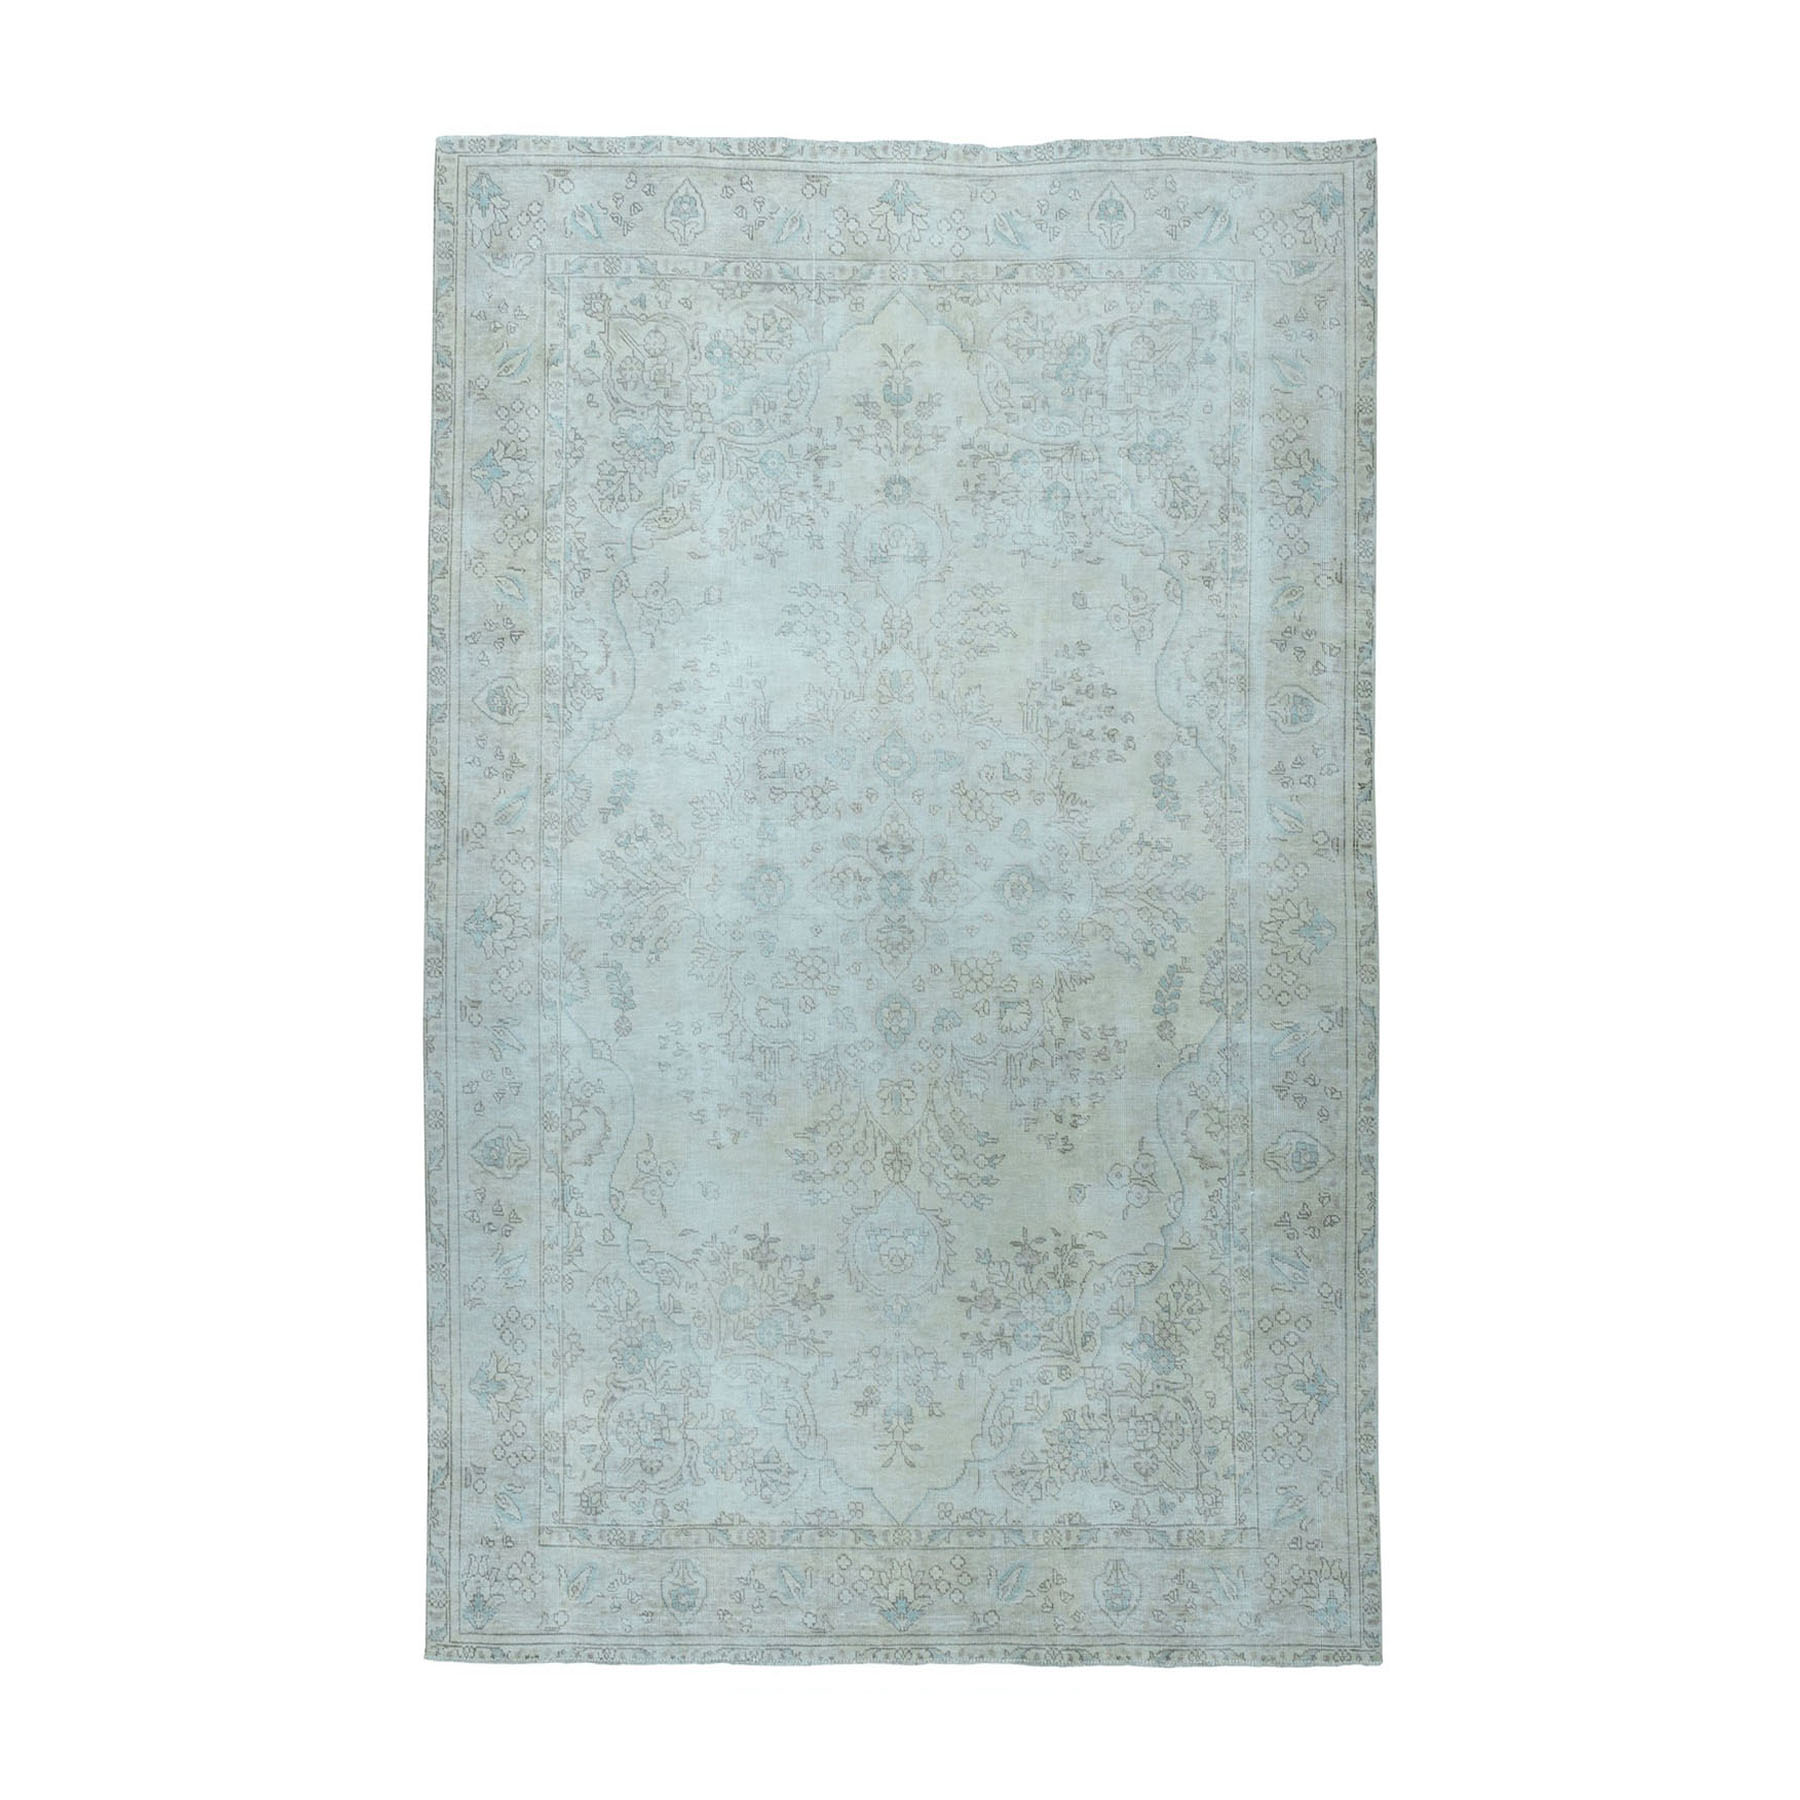 6'3"x9'5" Vintage White Wash Tabriz Worn Wool Hand Woven Oriental Rug 